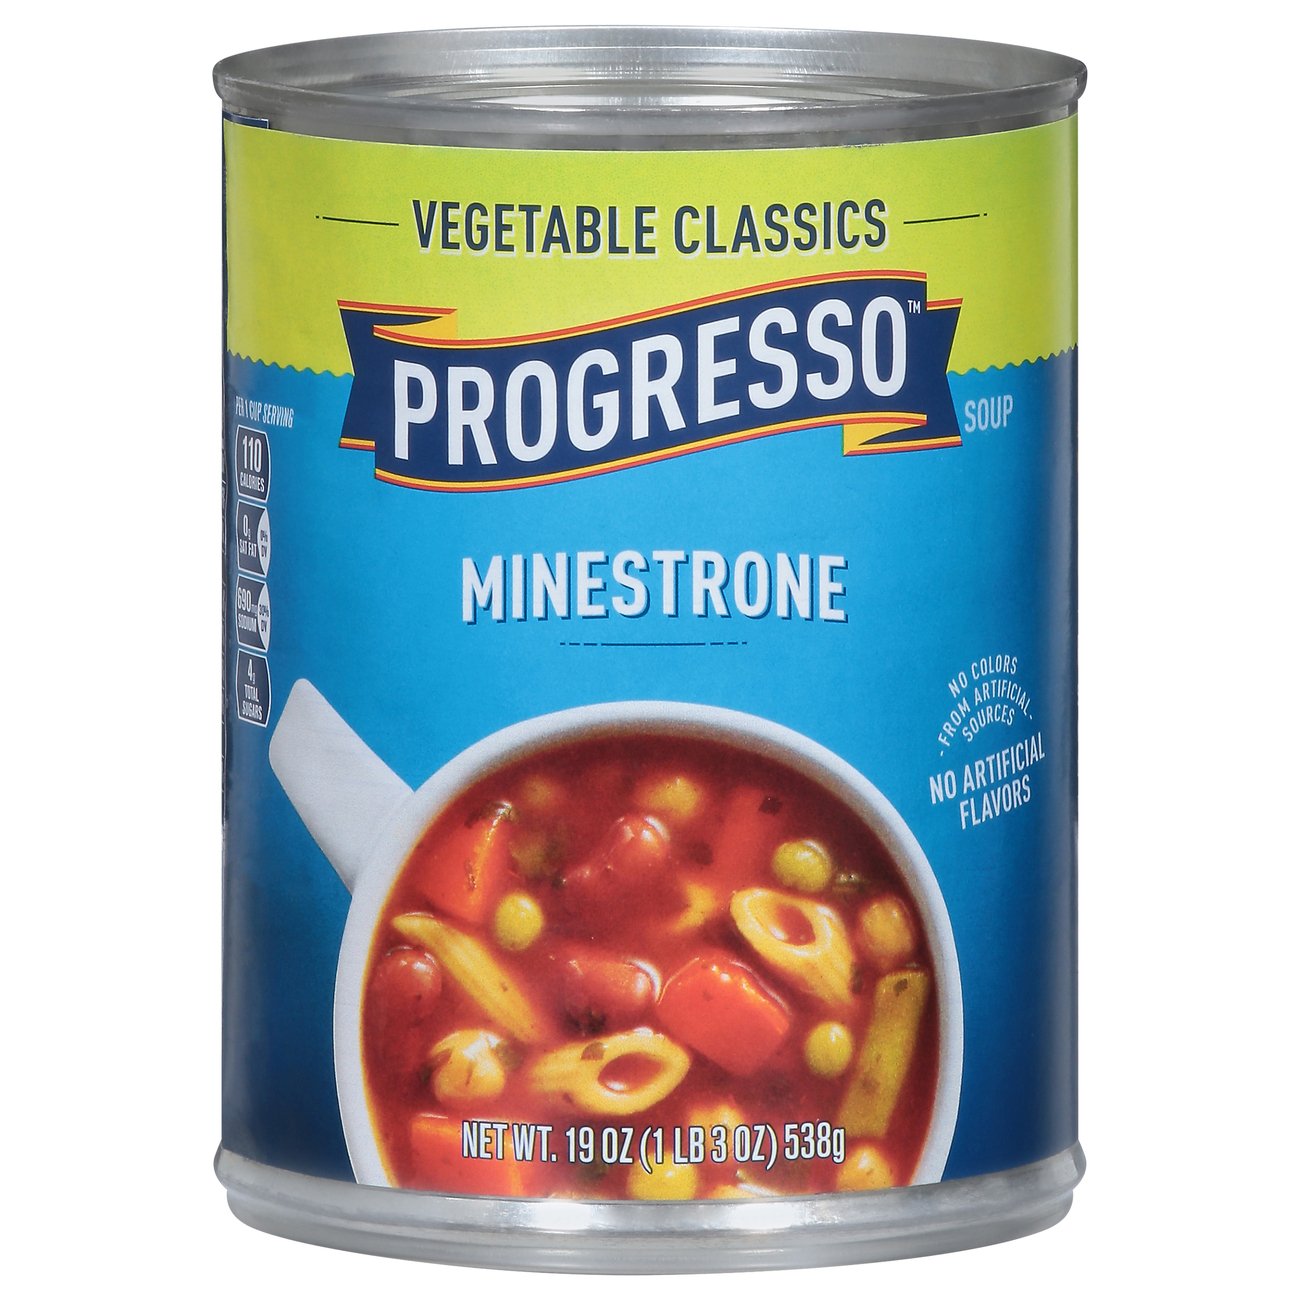 Progresso Vegetable Classics Minestrone Soup - Shop Soups & Chili at H-E-B